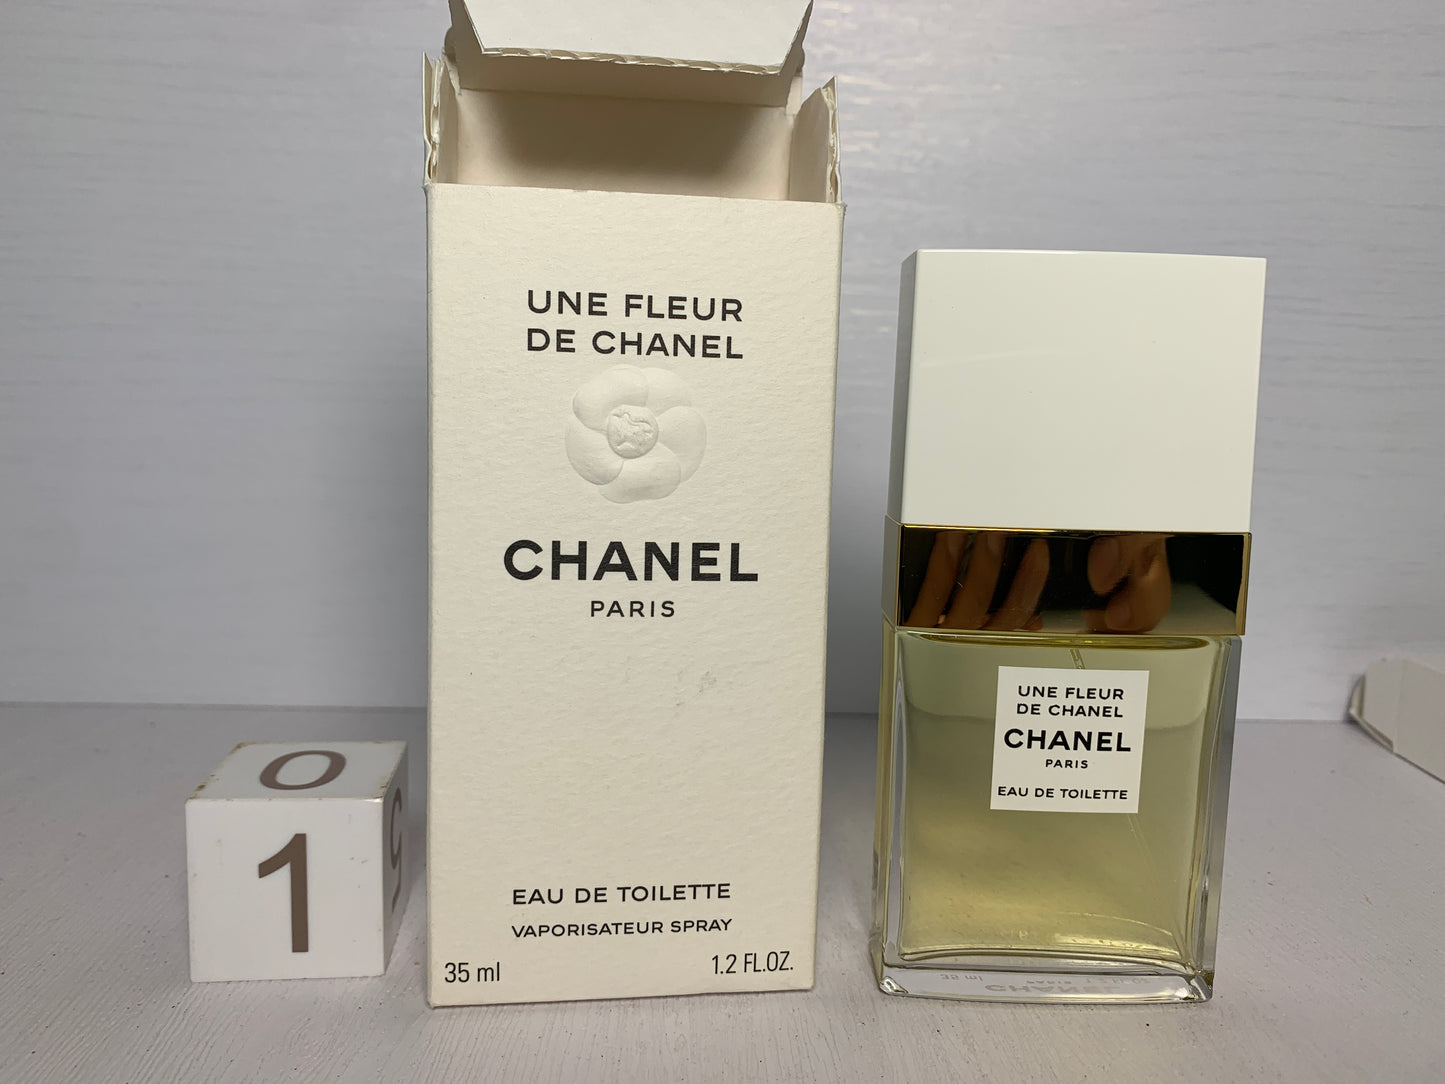 Chanel No.5 L'Eau Eau De Toilette Spray